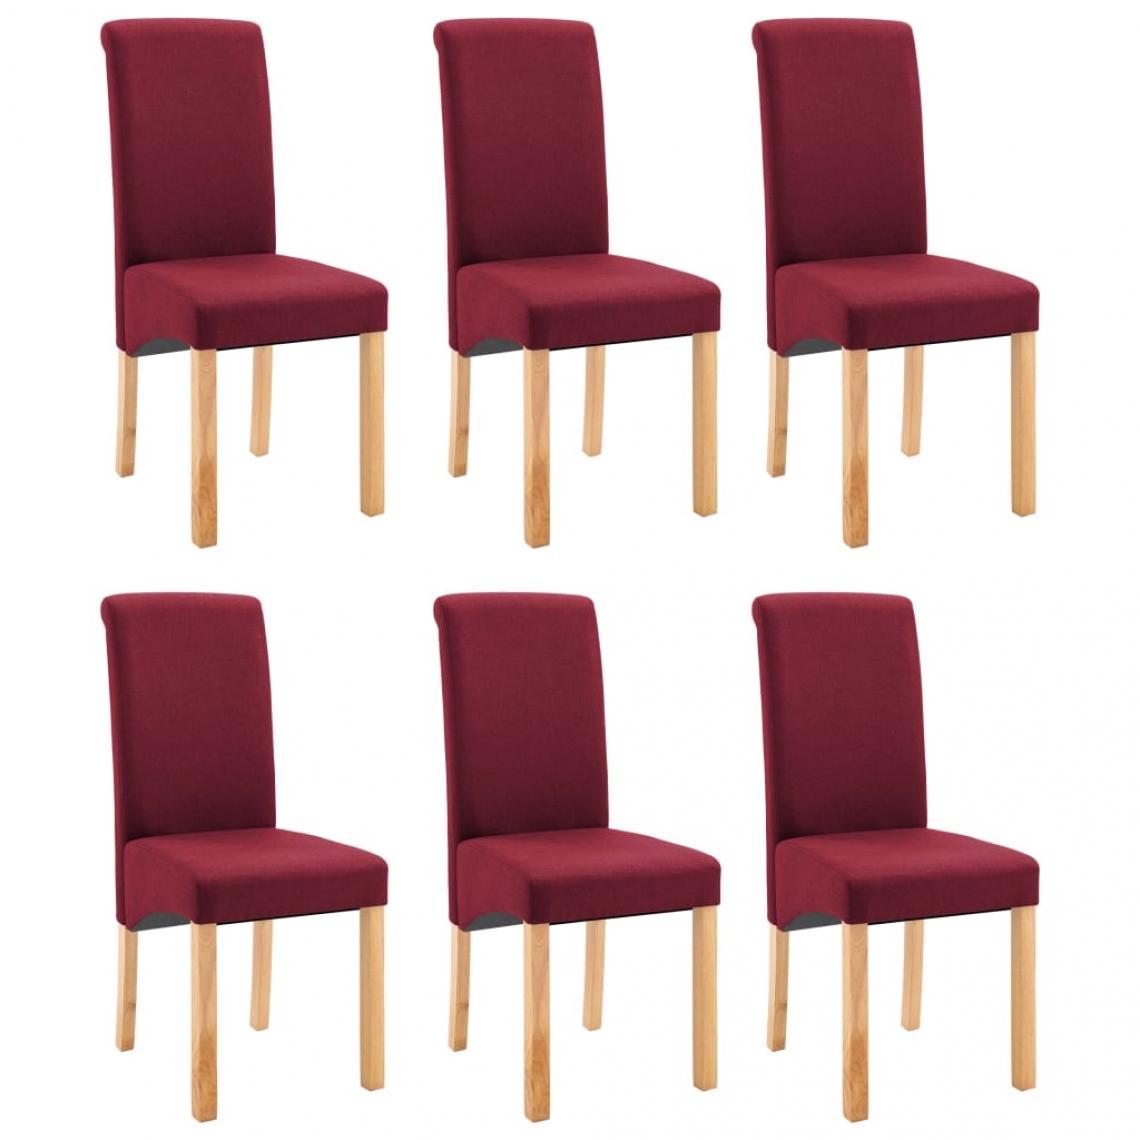 Decoshop26 - Lot de 6 chaises de salle à manger cuisine design classique tissu rouge CDS022841 - Chaises